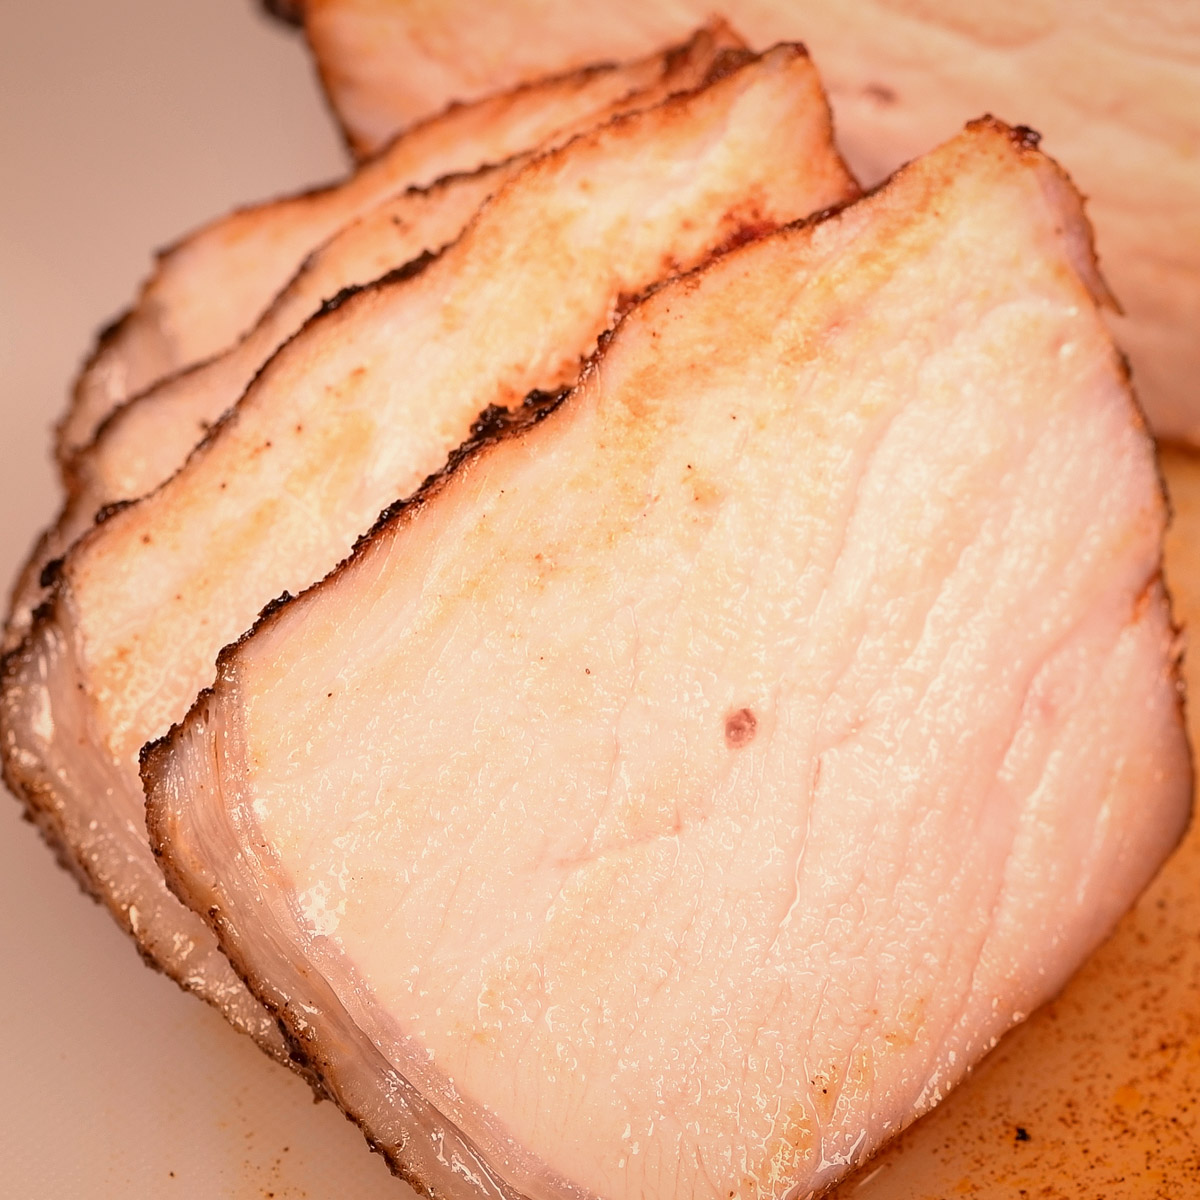 Sliced cooked pork chop.